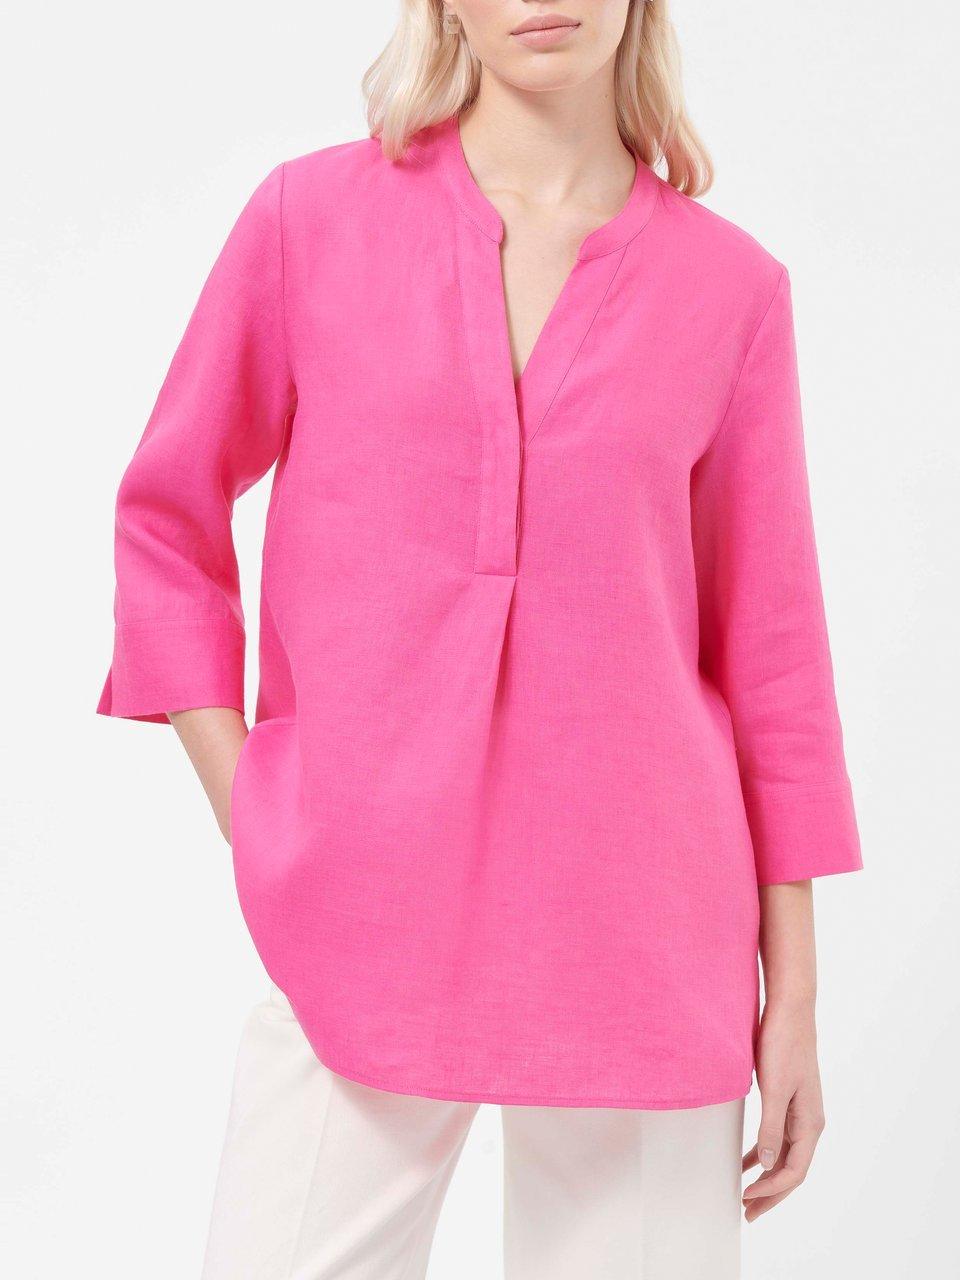 Pinke Damen Blusen im Online-Shop kaufen Peter Hahn